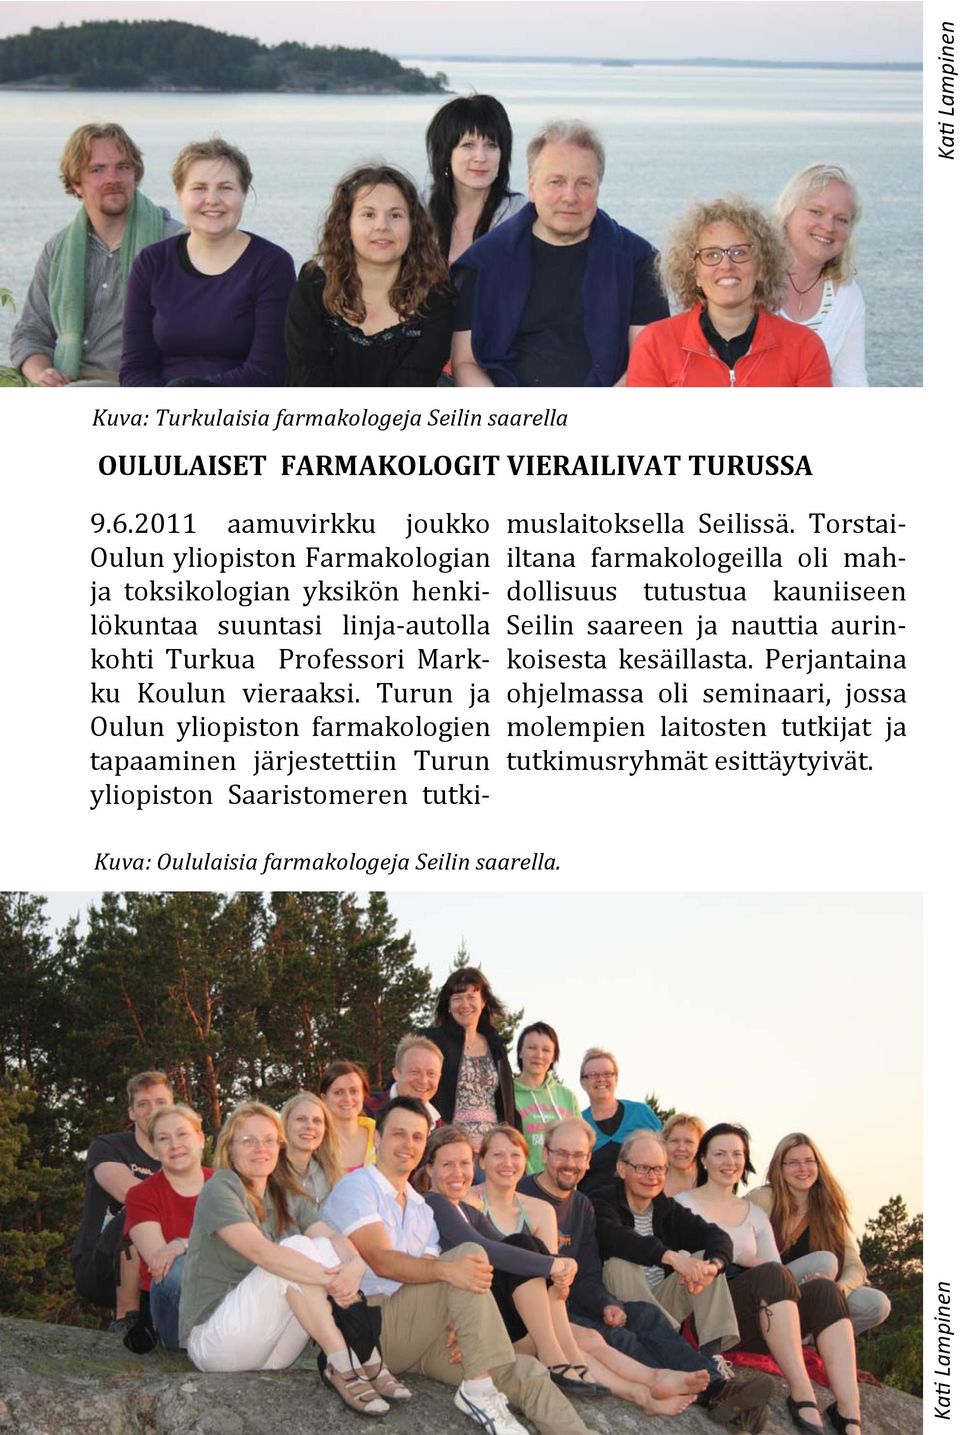 Turun ja Oulun yliopiston farmakologien tapaaminen ja rjestettiin Turun yliopiston Saaristomeren tutkimuslaitoksella Seilissa.